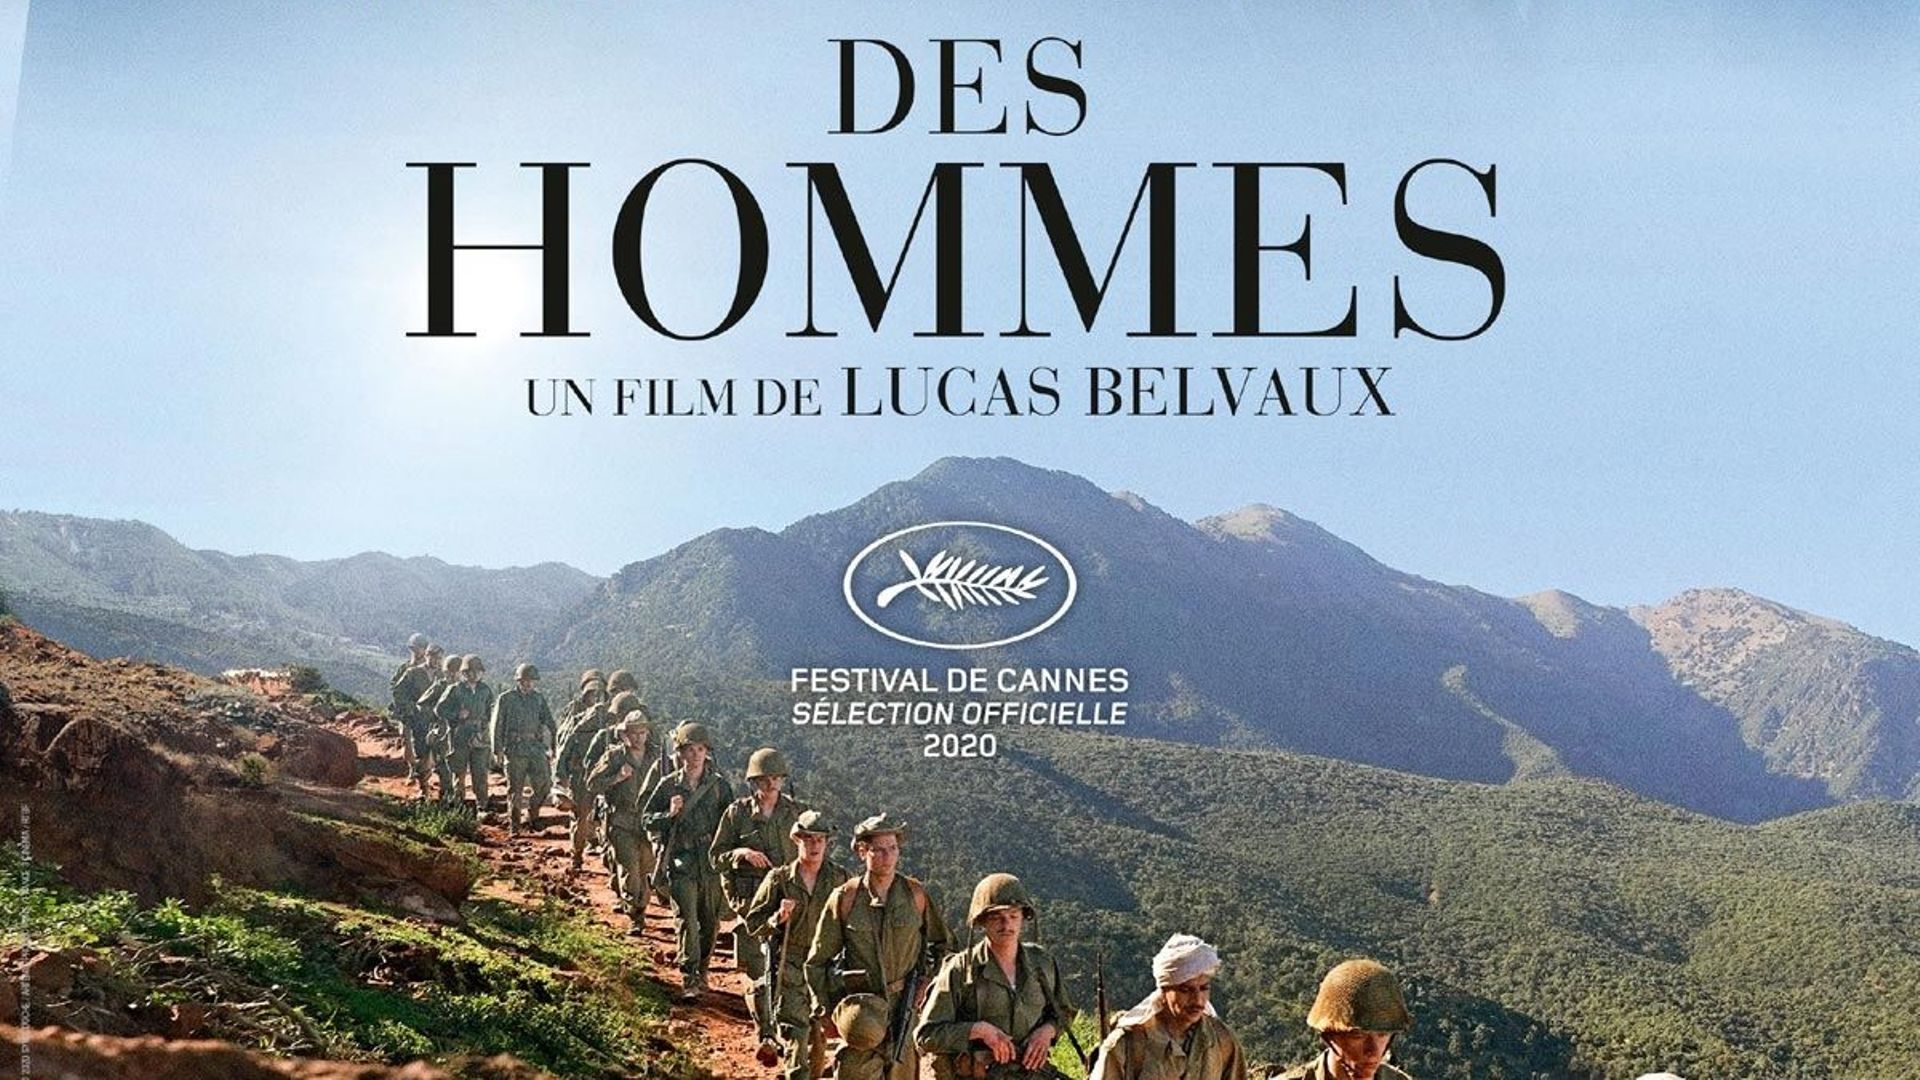 Des hommes, de Lucas Belvaux en avant-première du Festival du film d'Angoulême